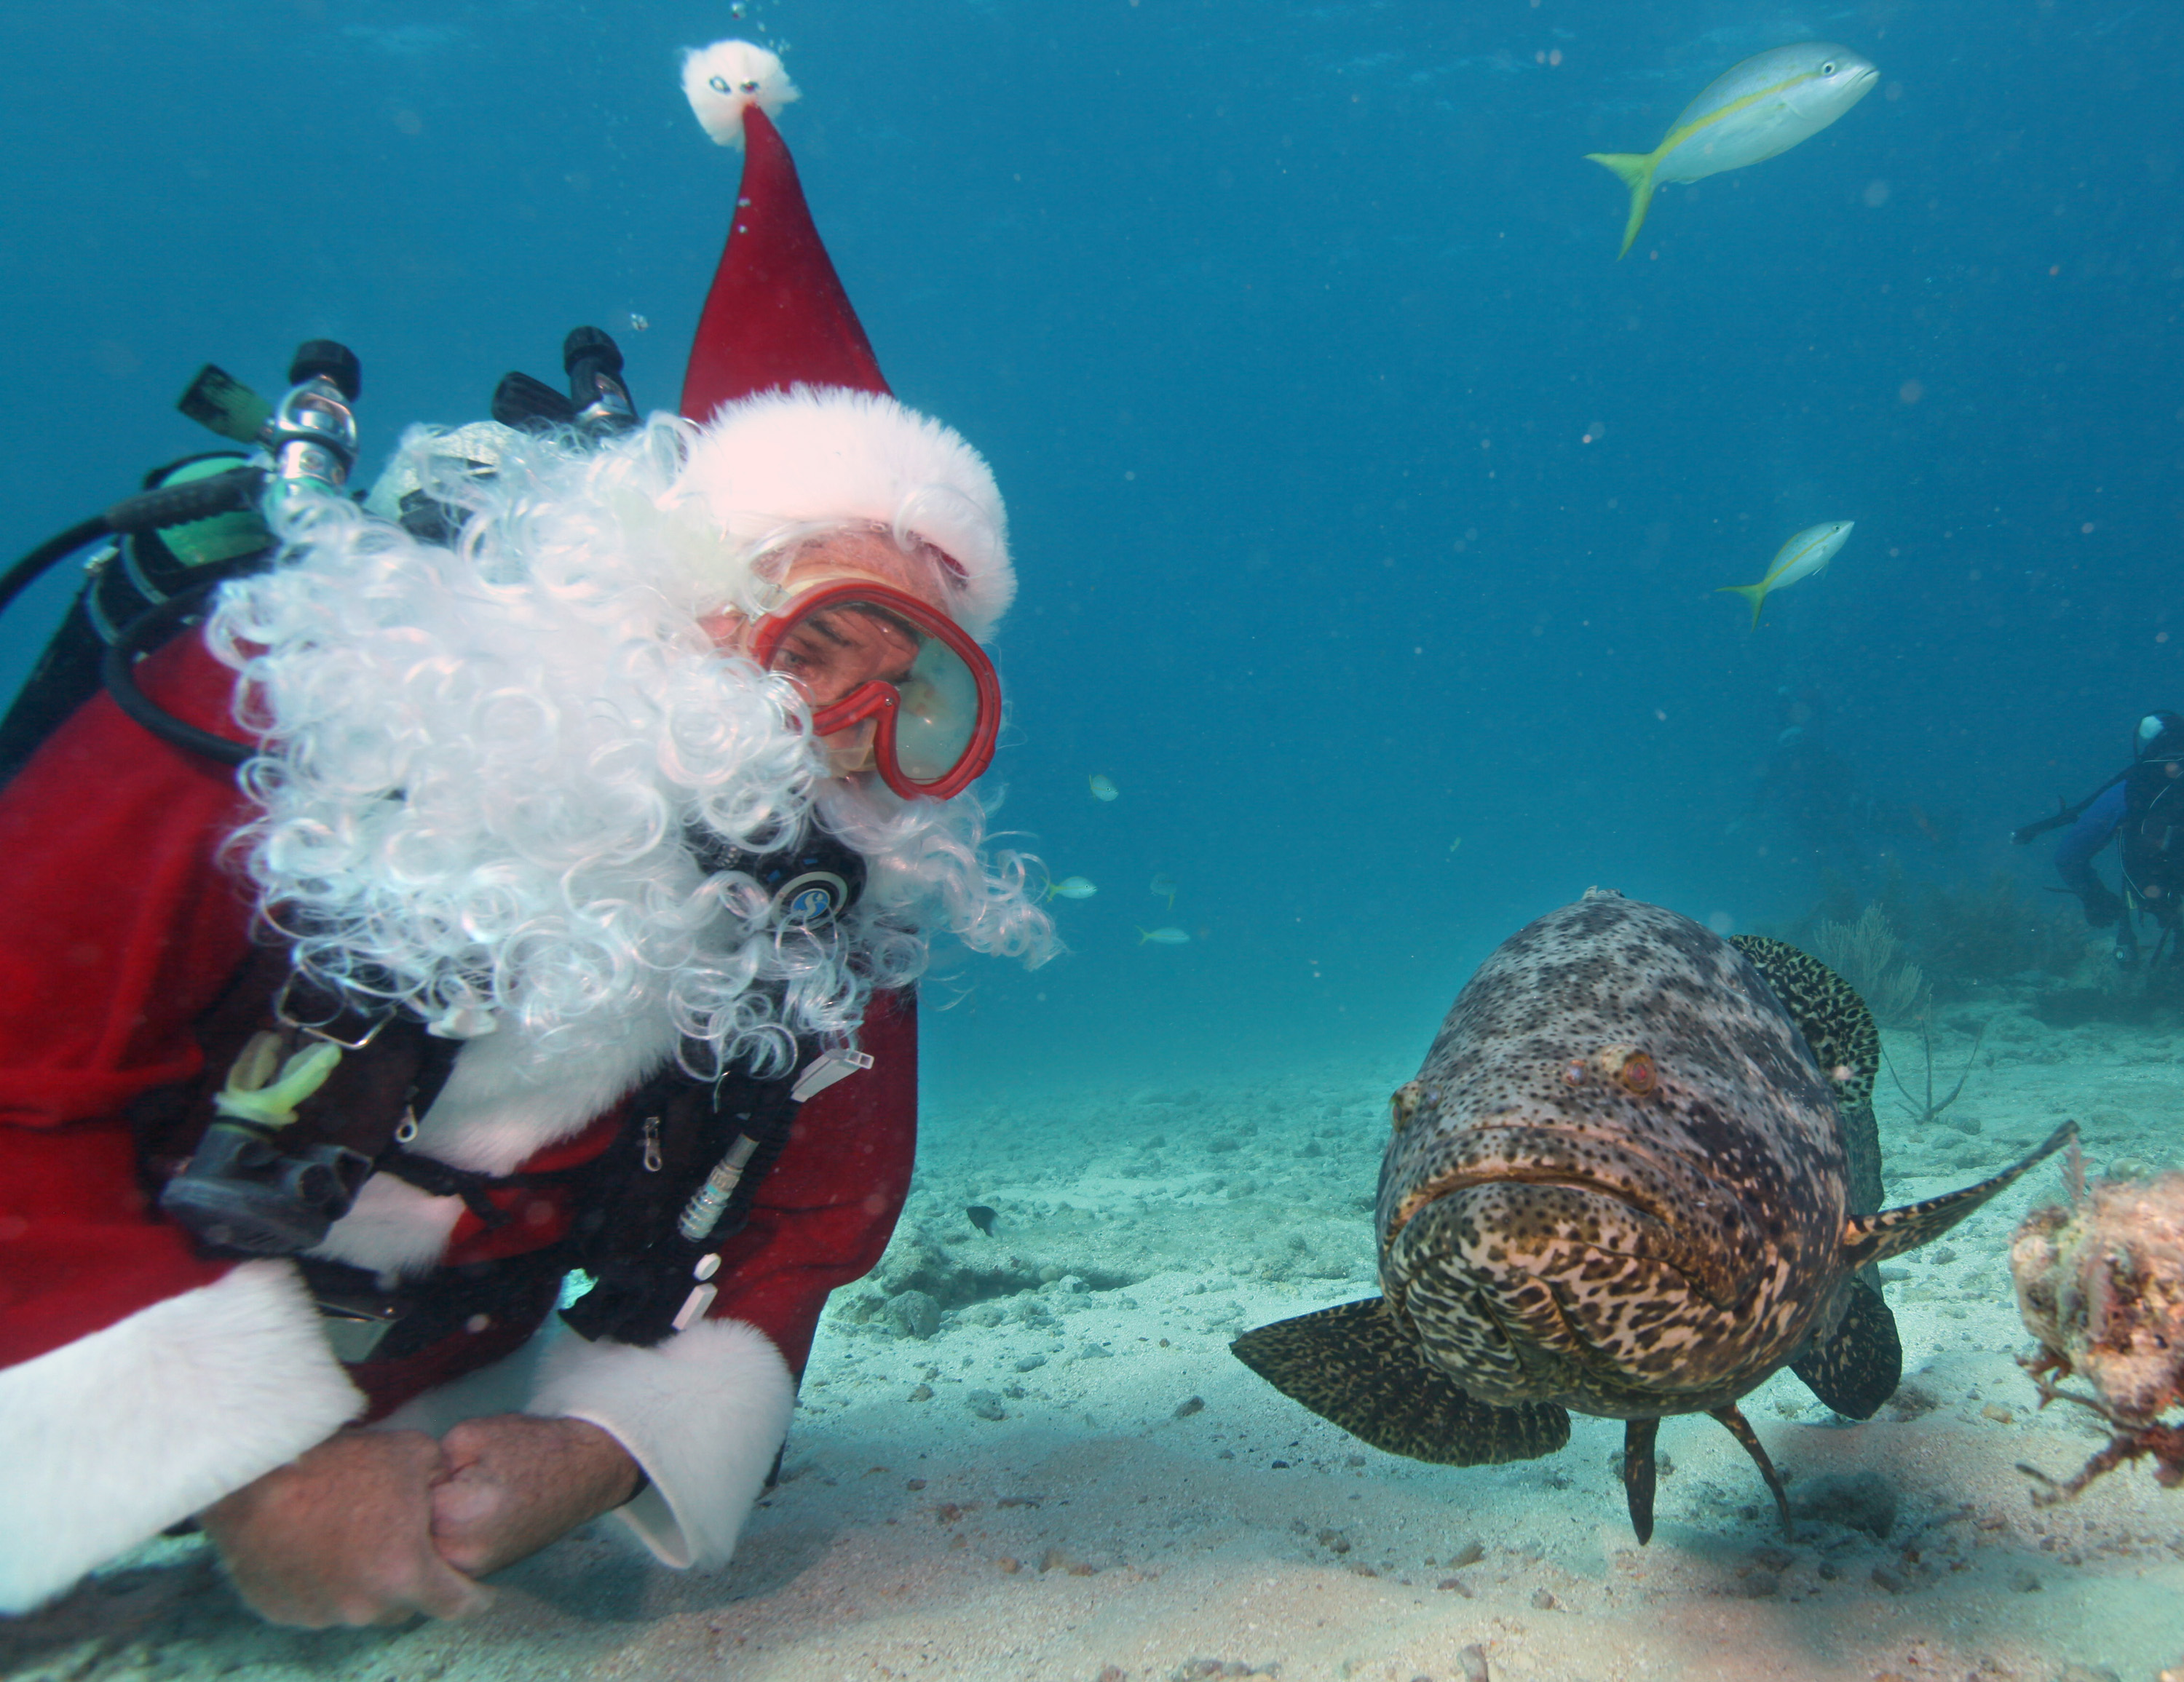 Санта Клаус поздравил с Рождеством обитателей подводного мира